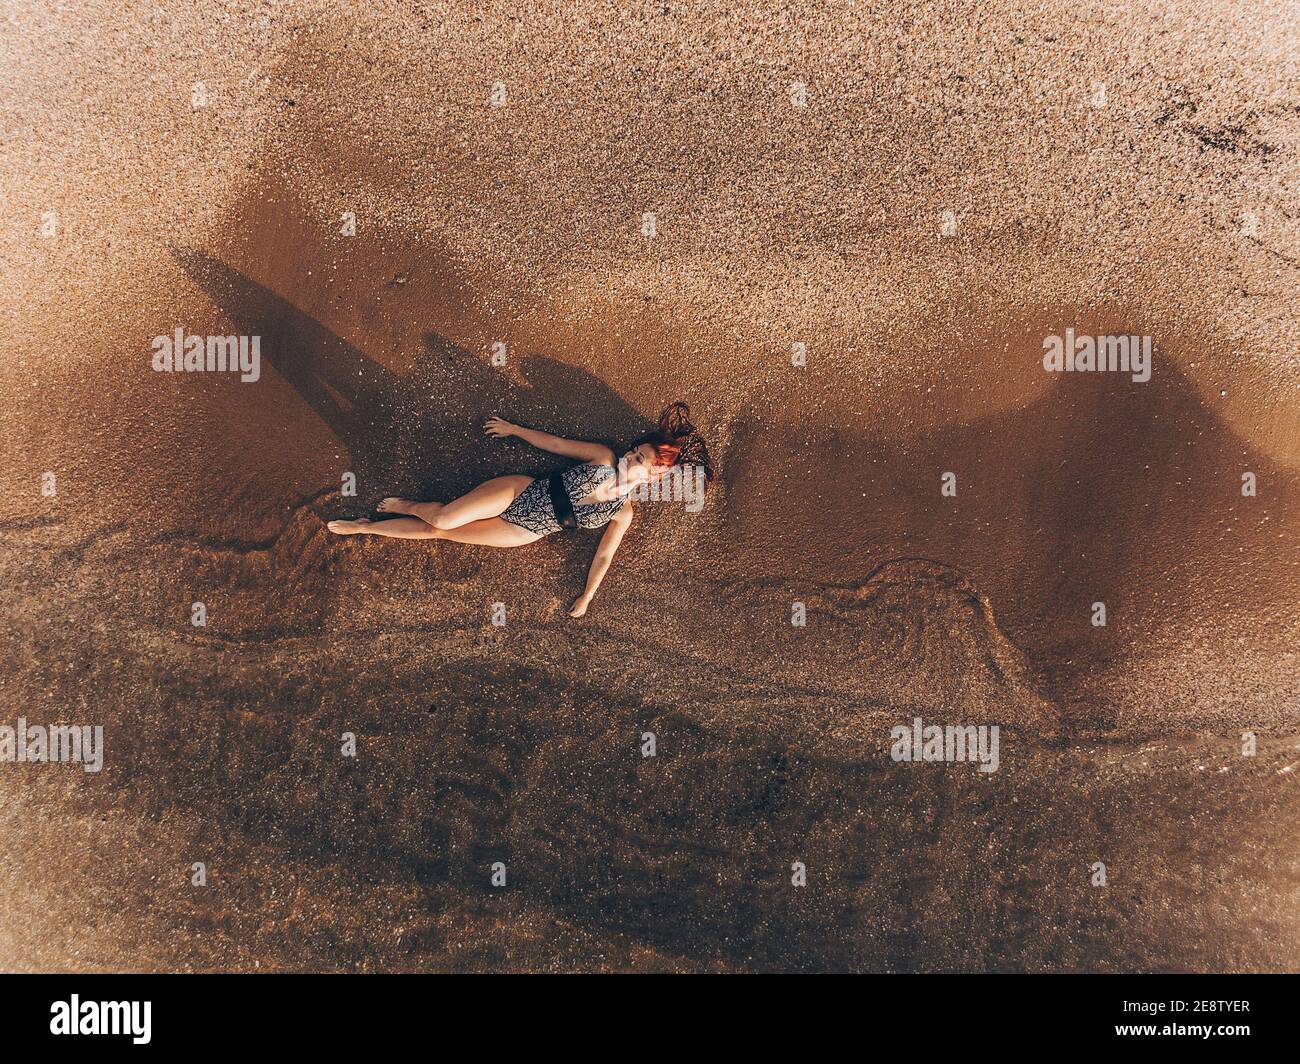 giovane donna con capelli rossi in un costume da bagno giace nelle acque costiere limpide del mare con un drone di ripresa con vista dall'alto in fondo sabbioso Foto Stock